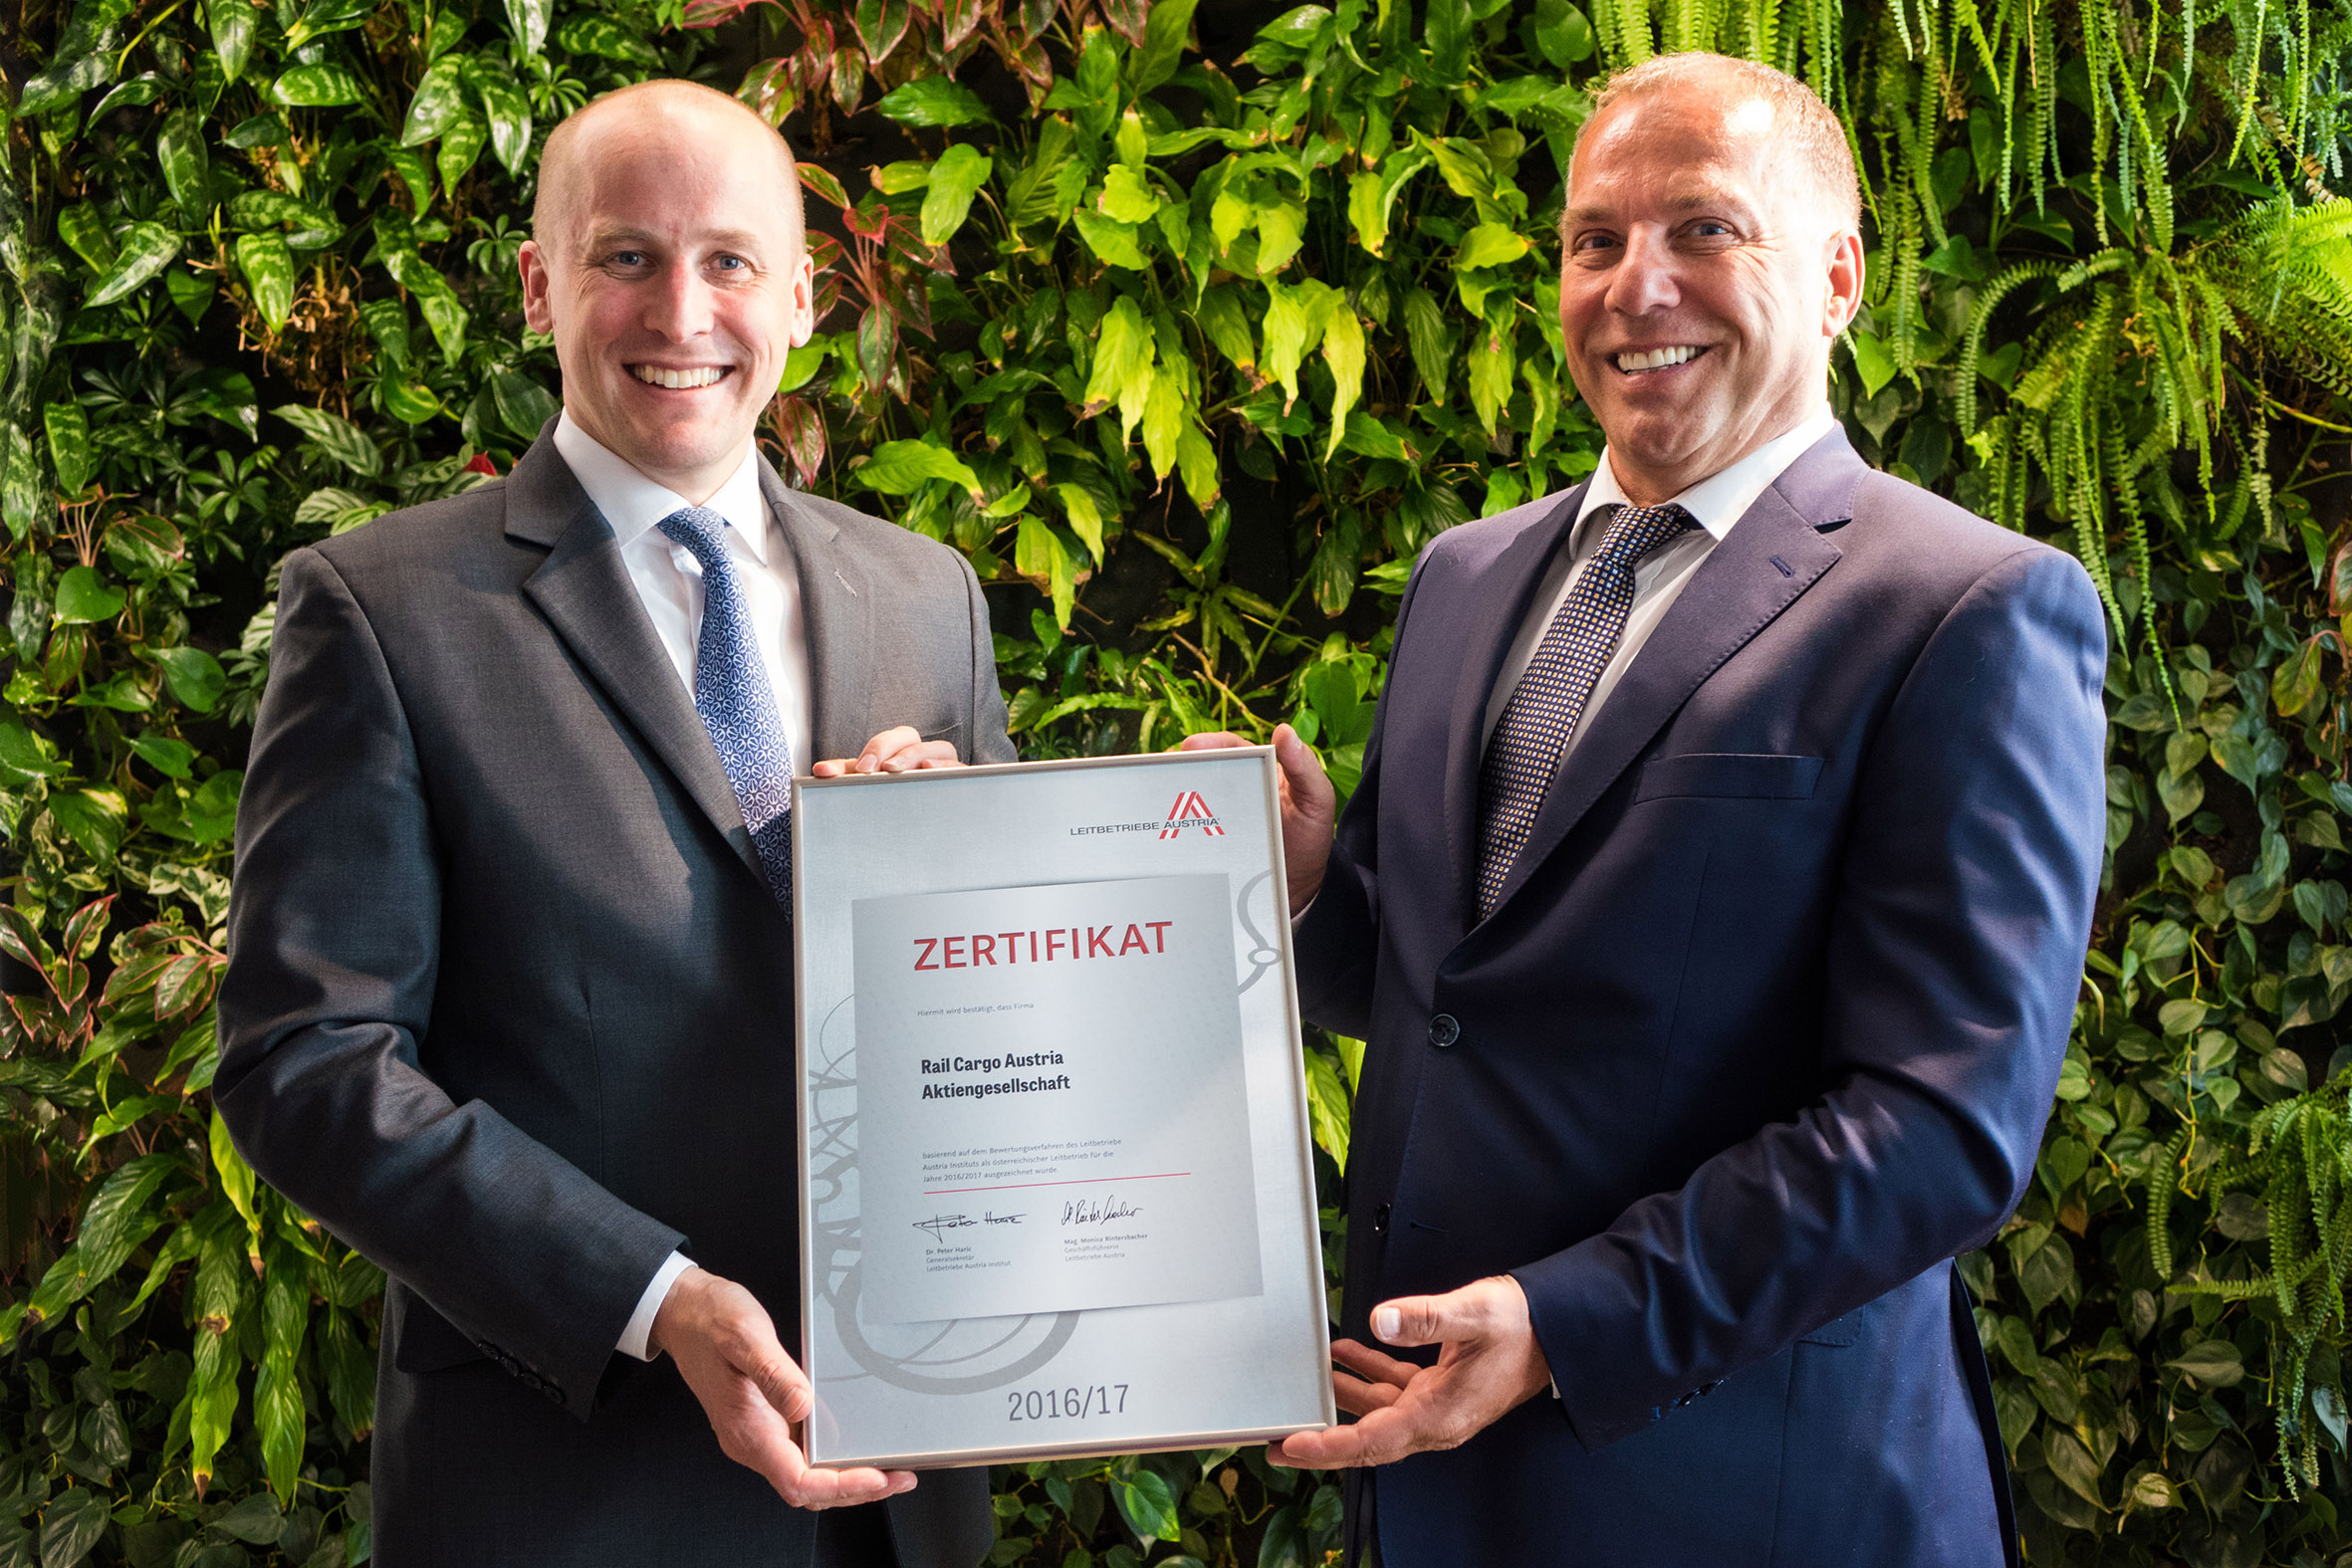 Rail Cargo Group recognised as “Leitbetrieb Austria”